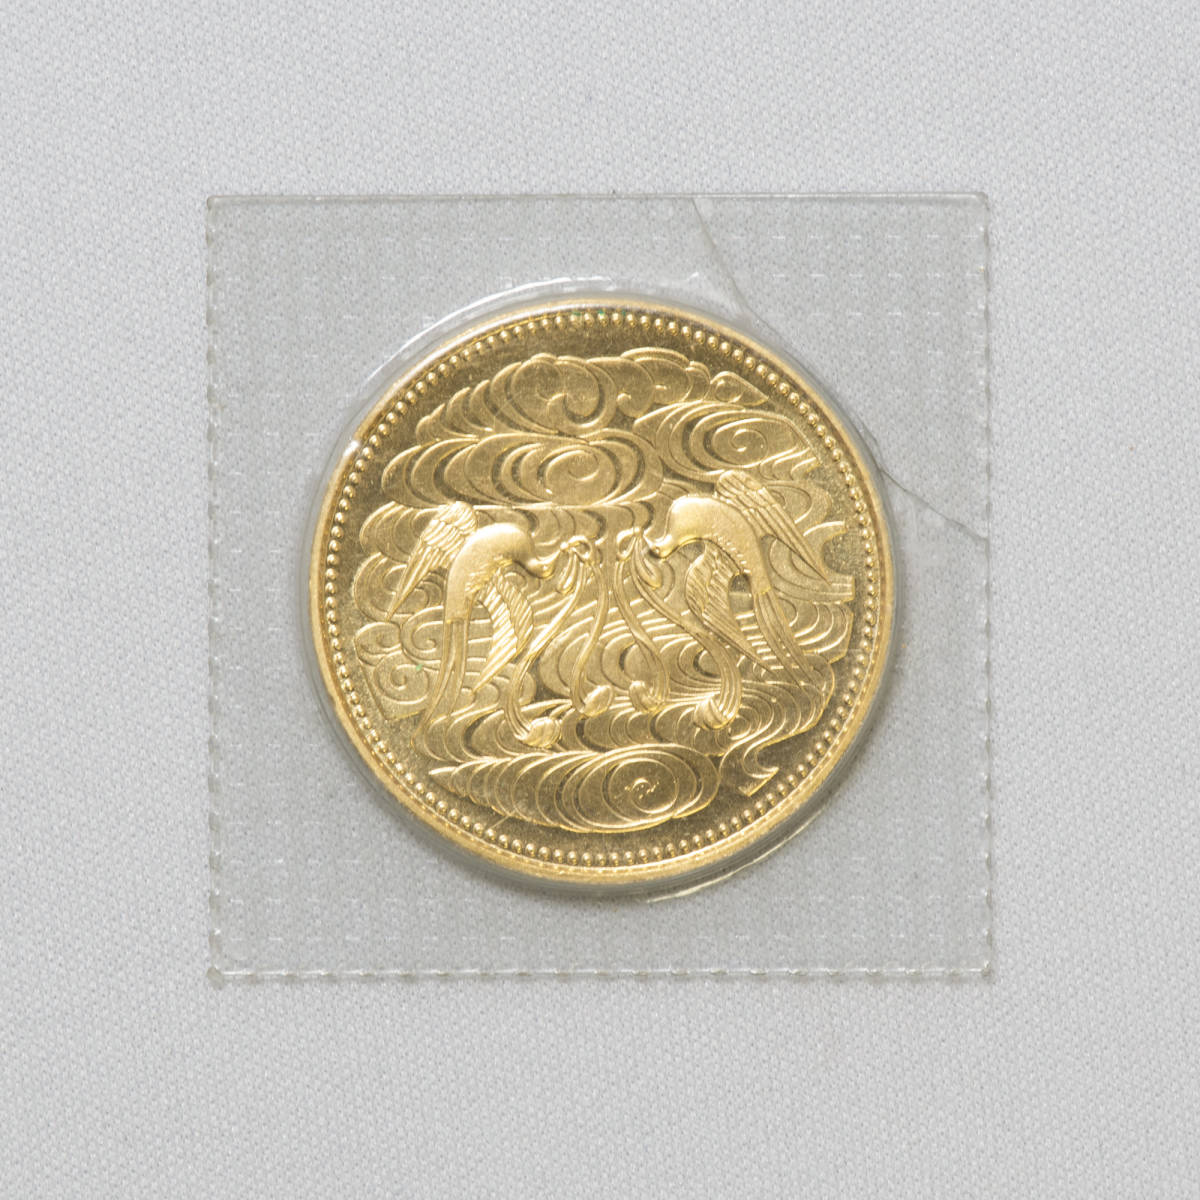 天皇陛下御在位60年記念貨幣 10万円金貨 純金 20g 昭和61年